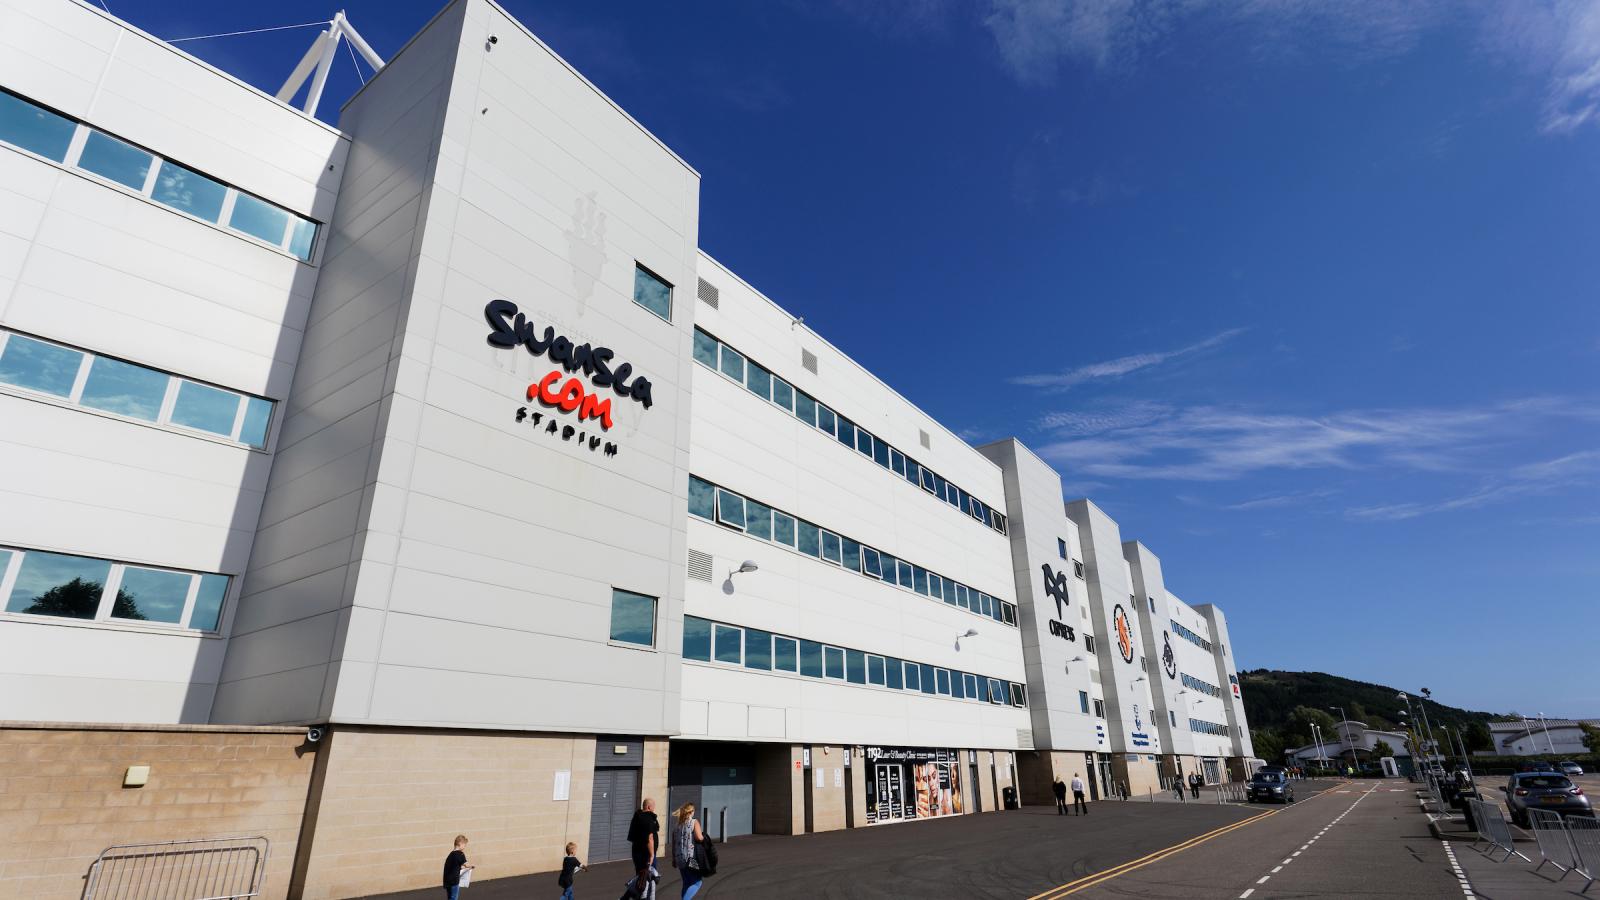 Swansea.com stadium